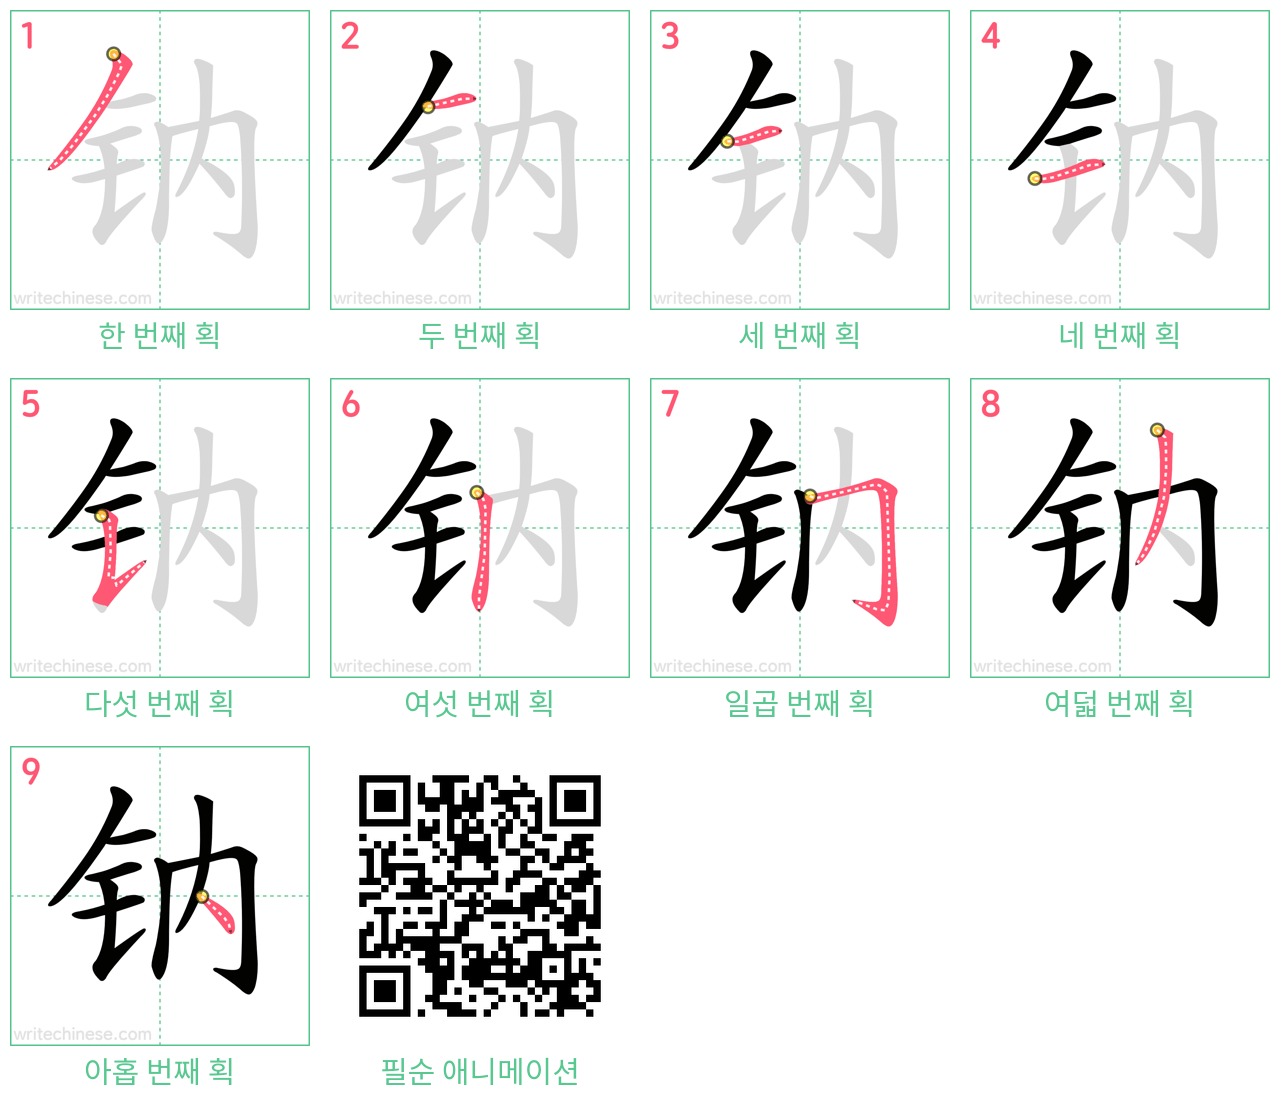 钠 step-by-step stroke order diagrams